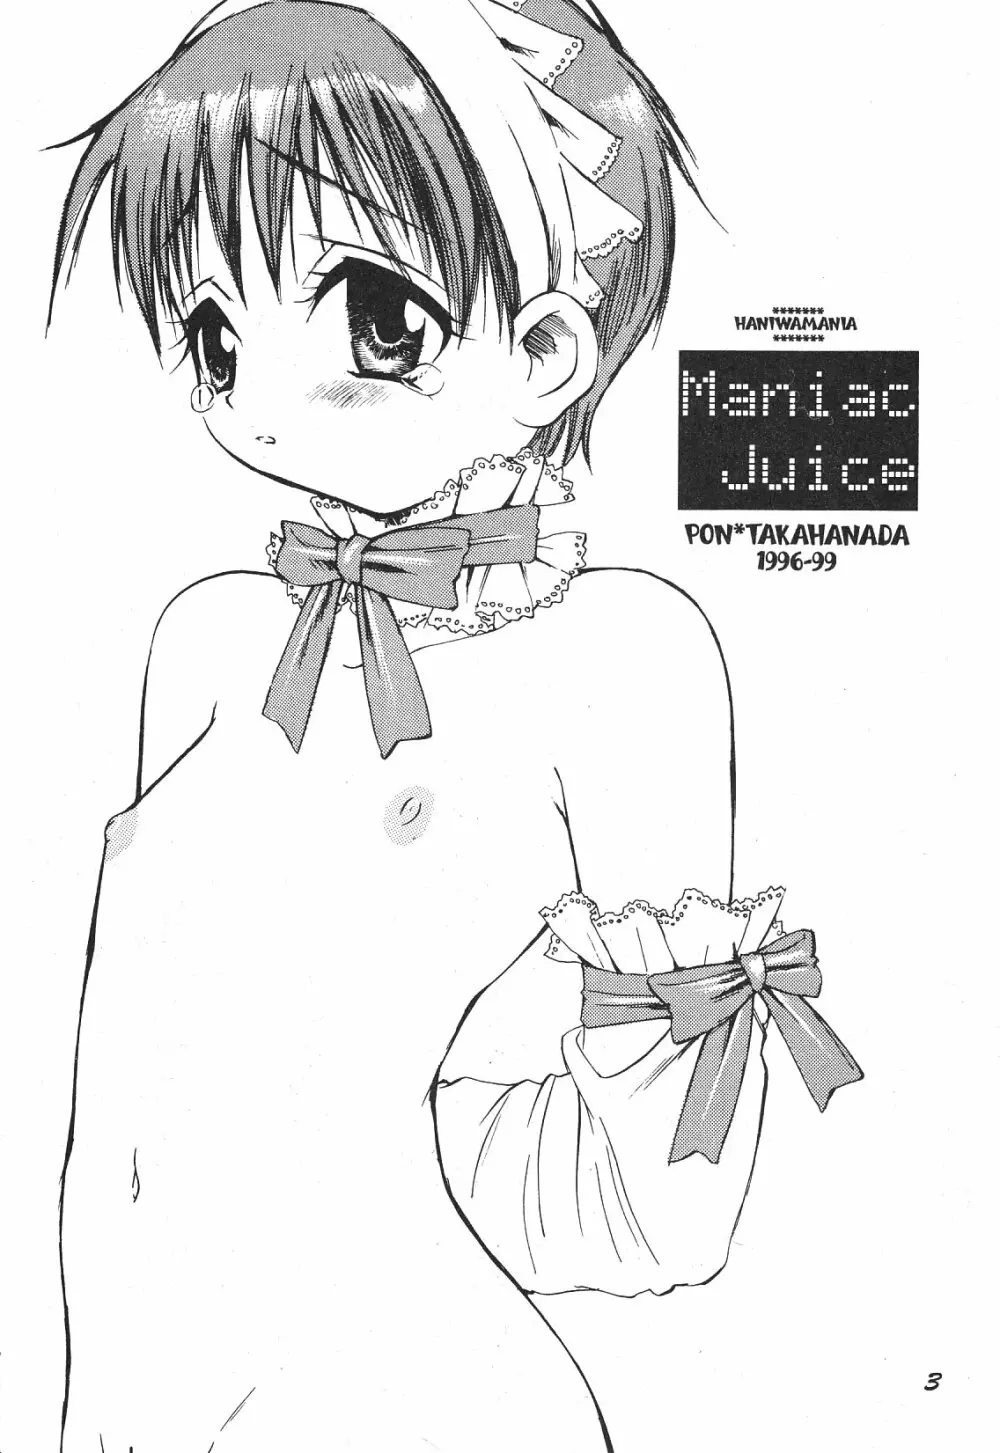 Maniac Juice 女シンジ再録集 '96-'99 - page3